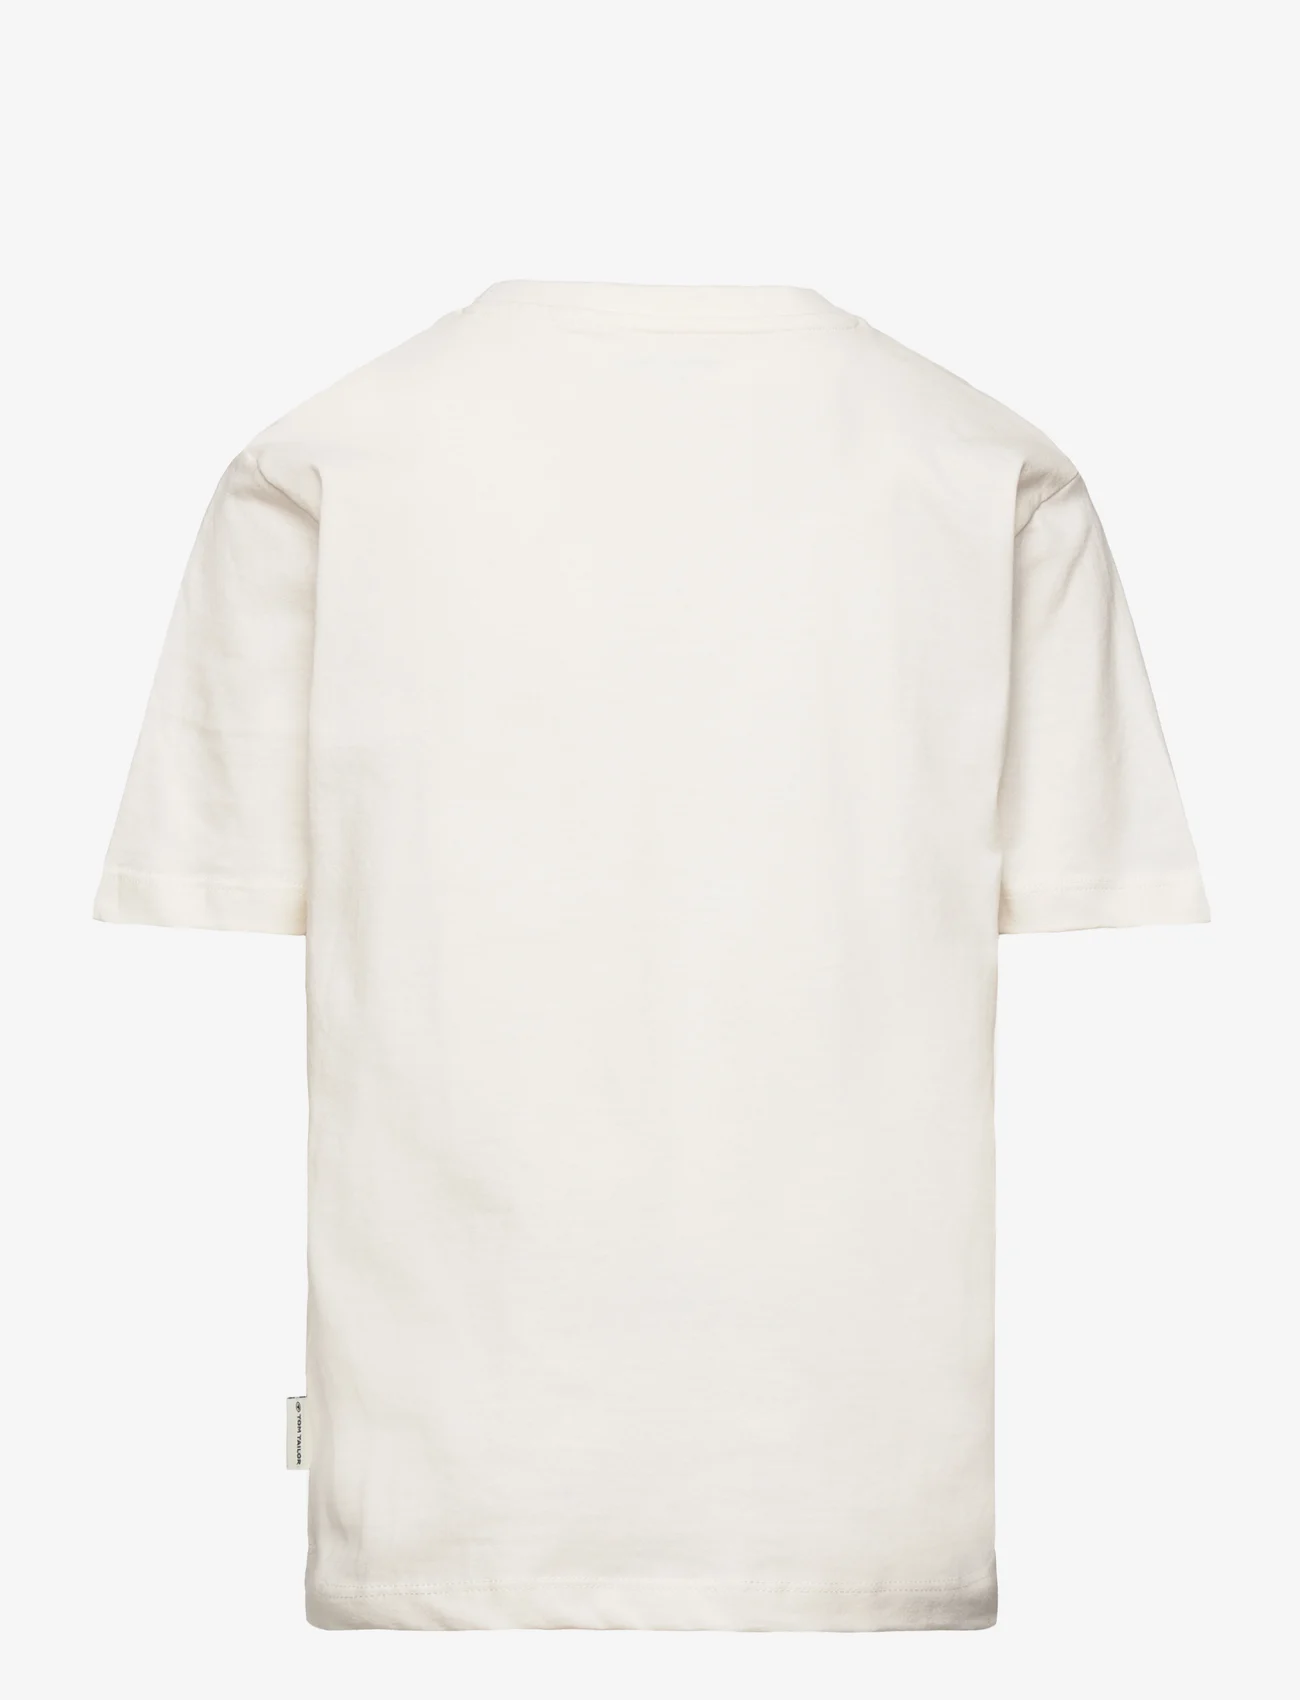 Tom Tailor - regular printed t-shirt - lühikeste varrukatega t-särgid - wool white - 1